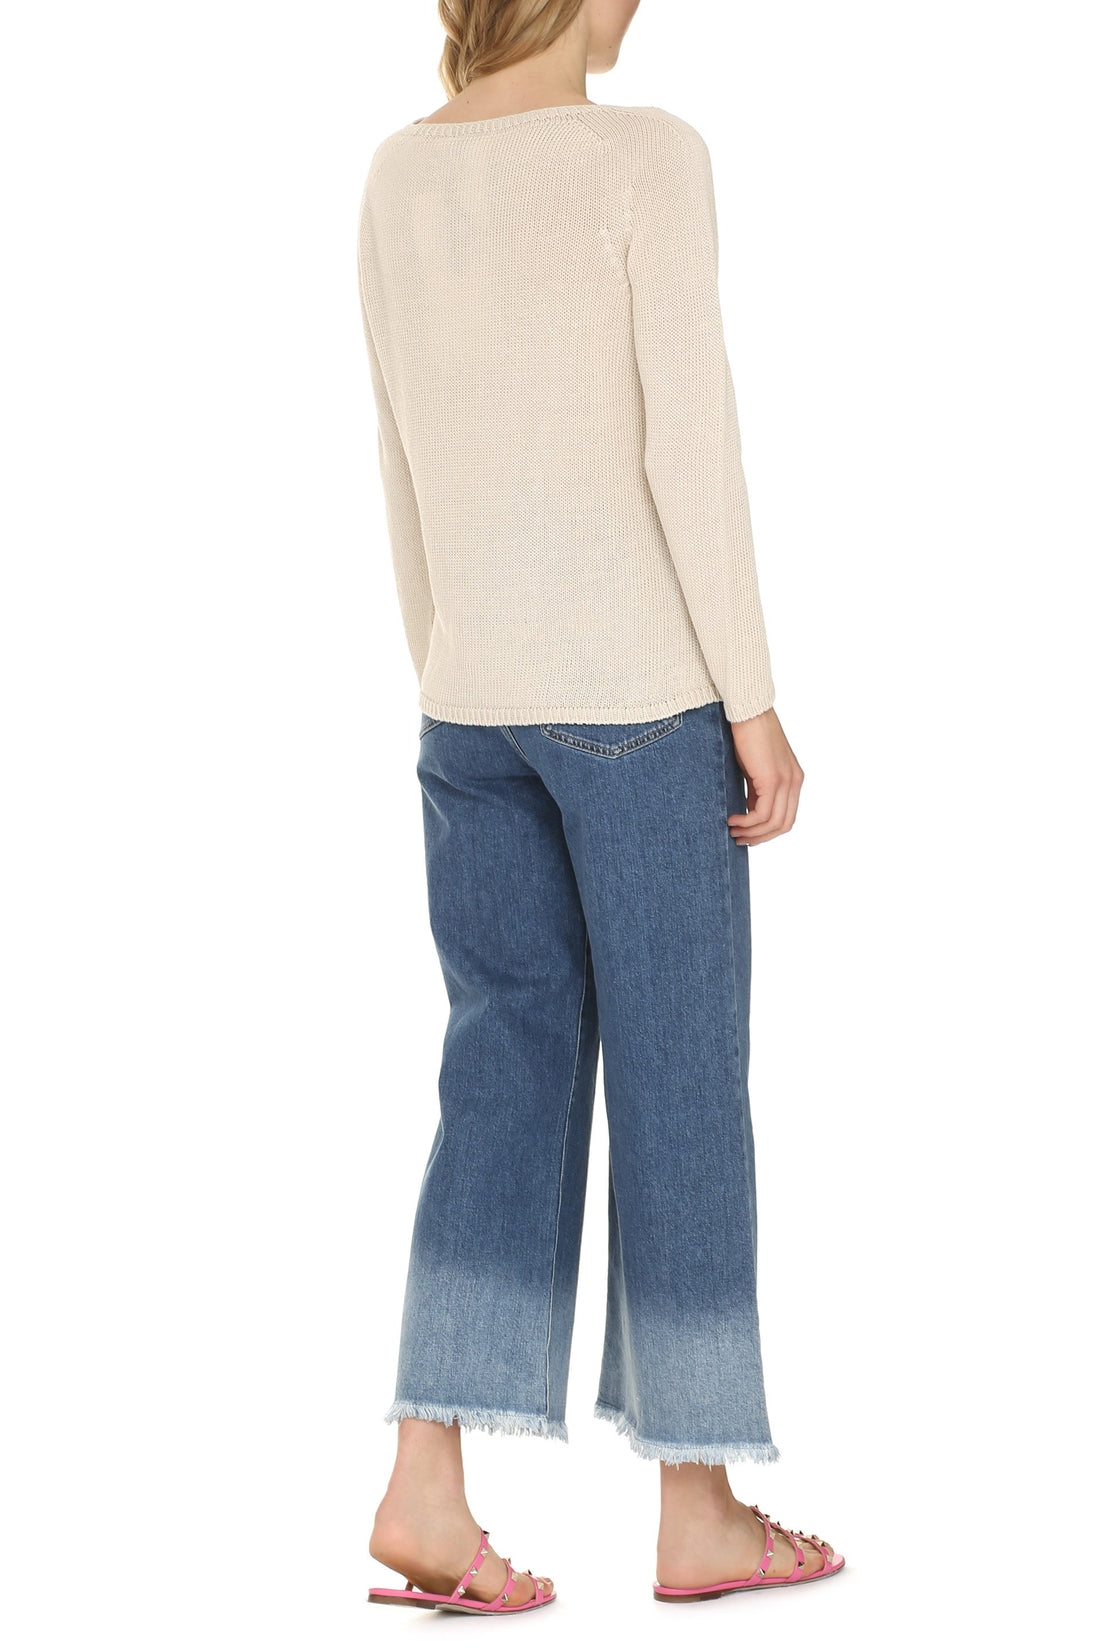 S MAX MARA-OUTLET-SALE-Giolino linen sweater-ARCHIVIST